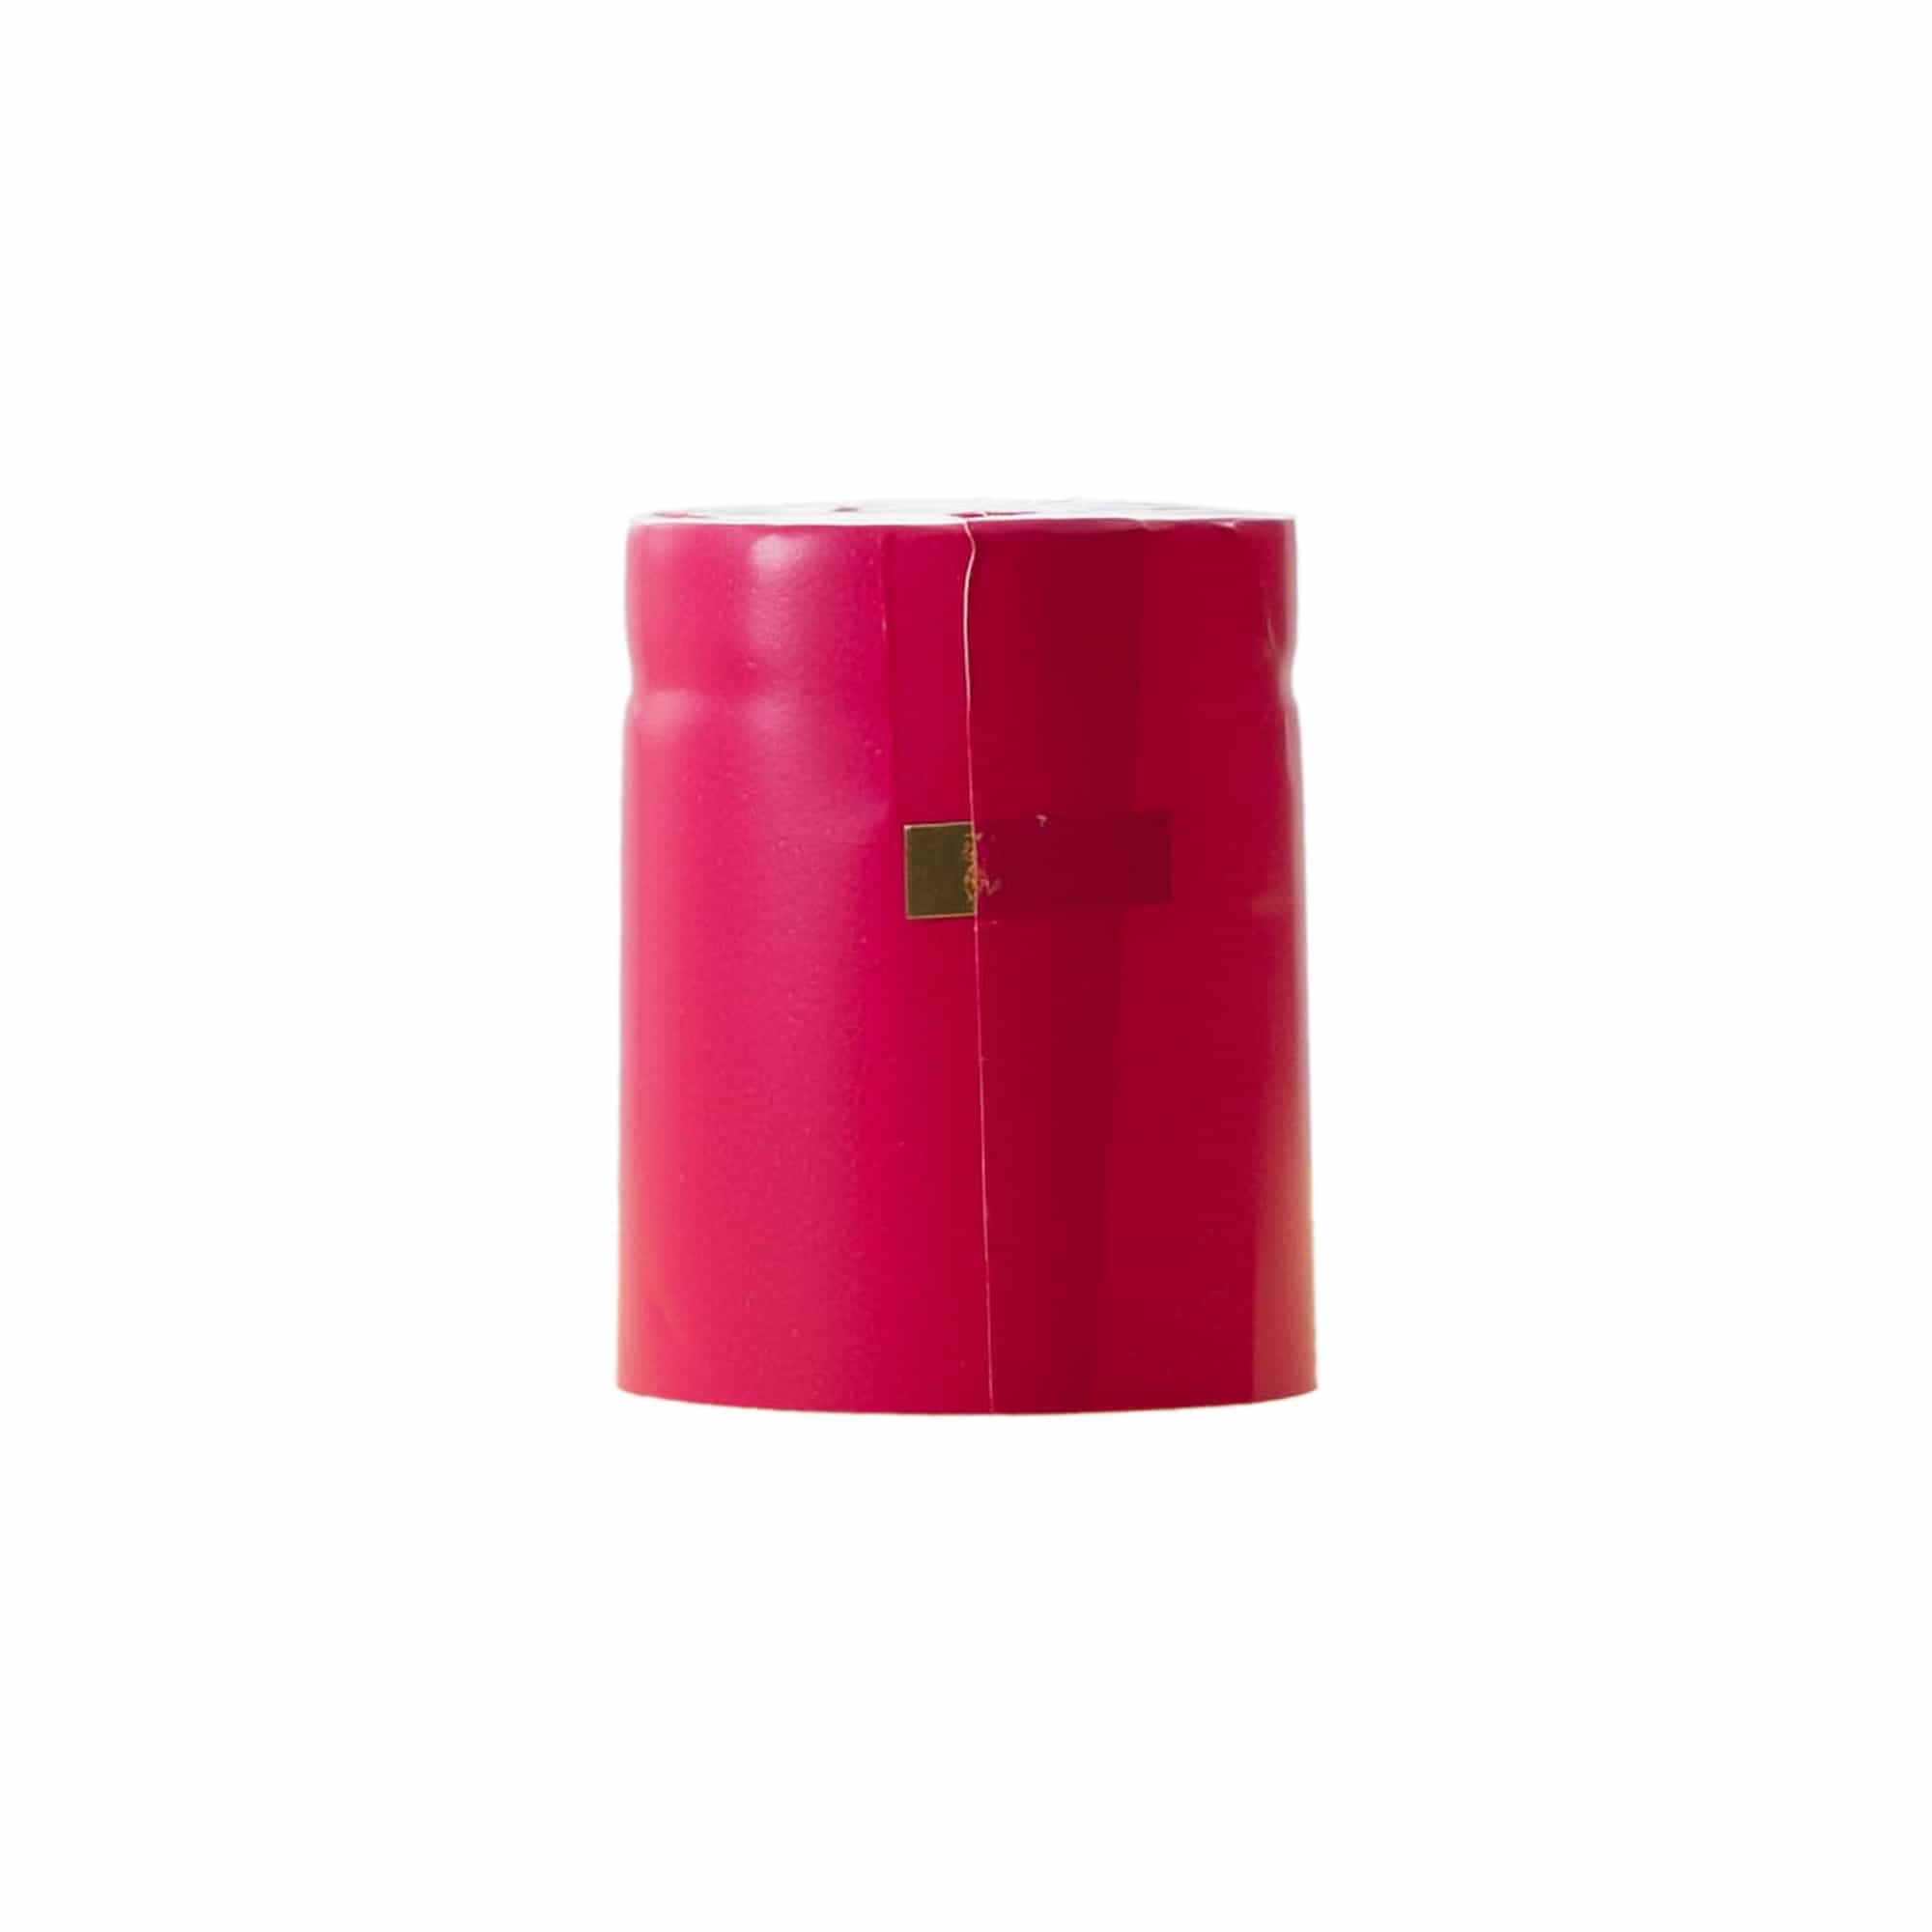 Smršťovací kapsle 32x41, plast PVC, růžová